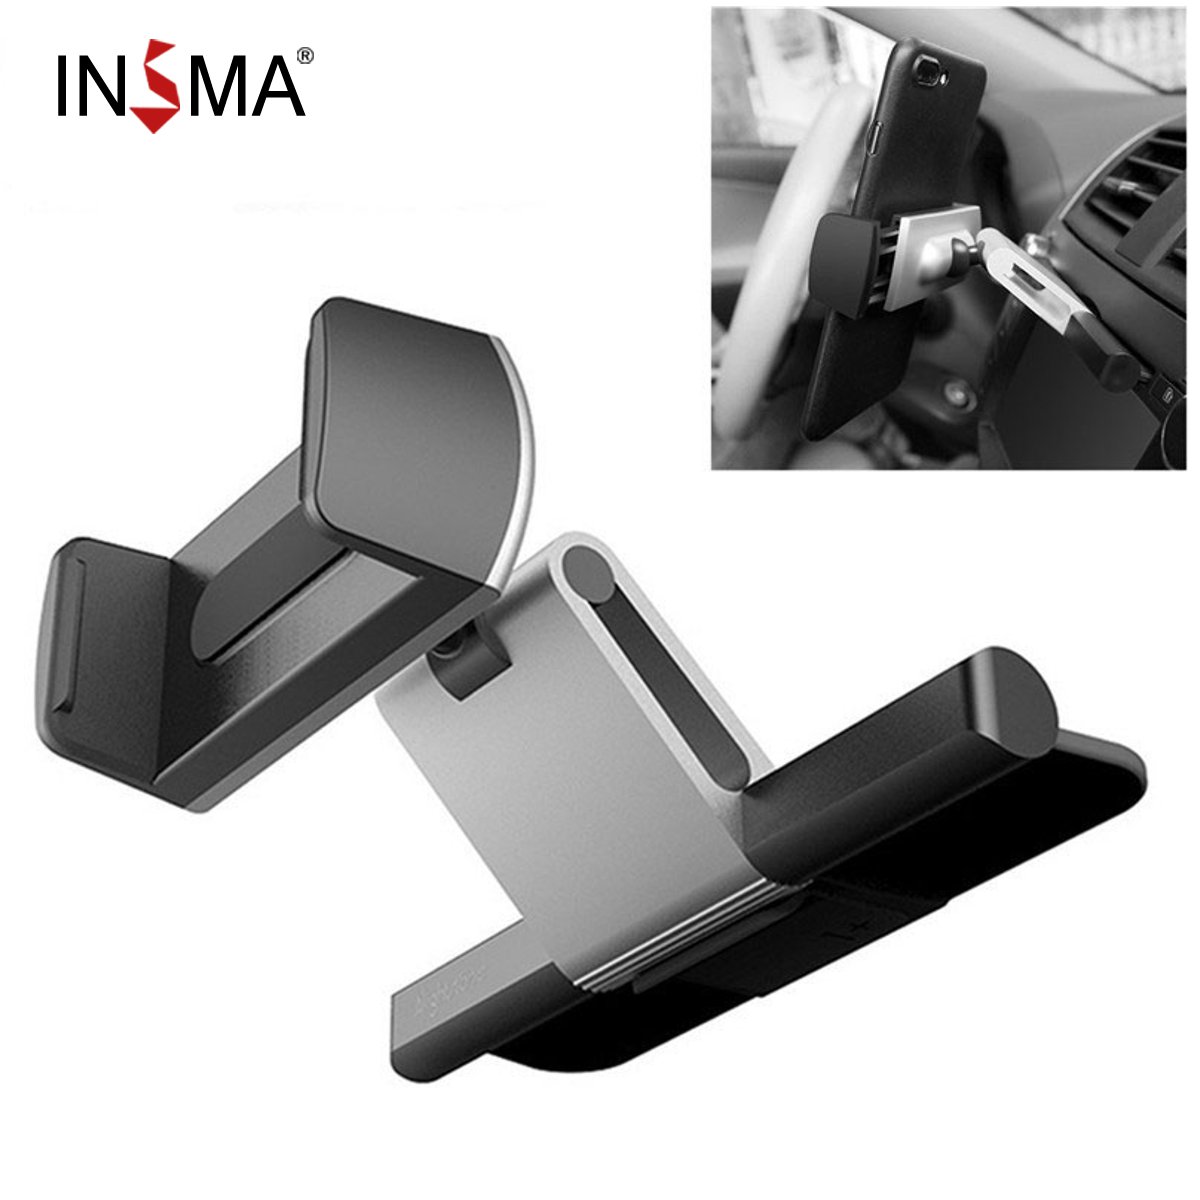 INSMA Aluminium Auto CD Slot Mount Cradle Houder Universele Mobiele Telefoon Standhouder Beugel voor iPhone voor Samsung GPS Auto houder